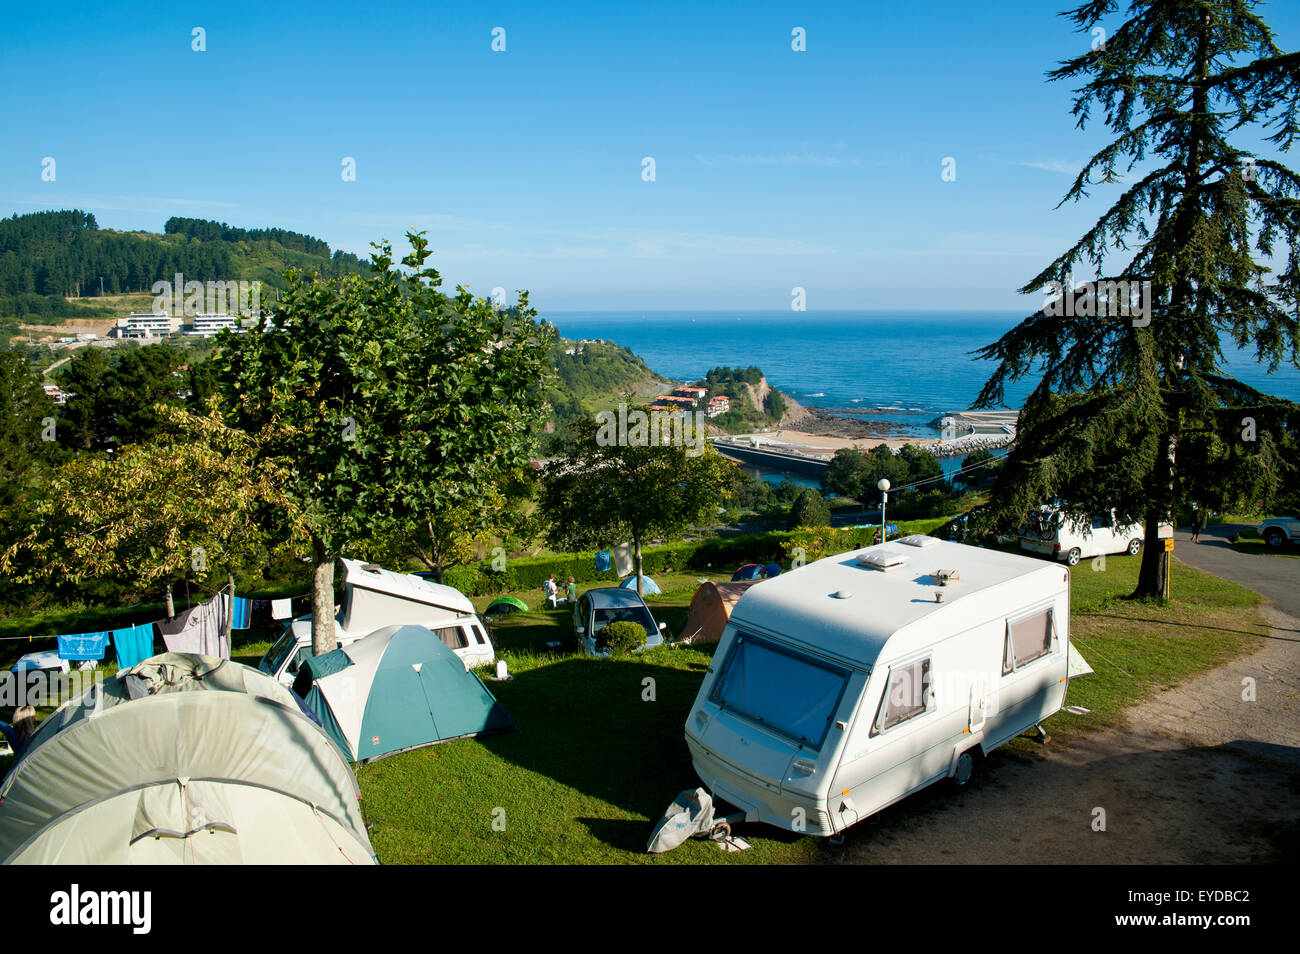 Campingplatz In Mutriku, Baskisches Land, Spanien Stockfotografie - Alamy